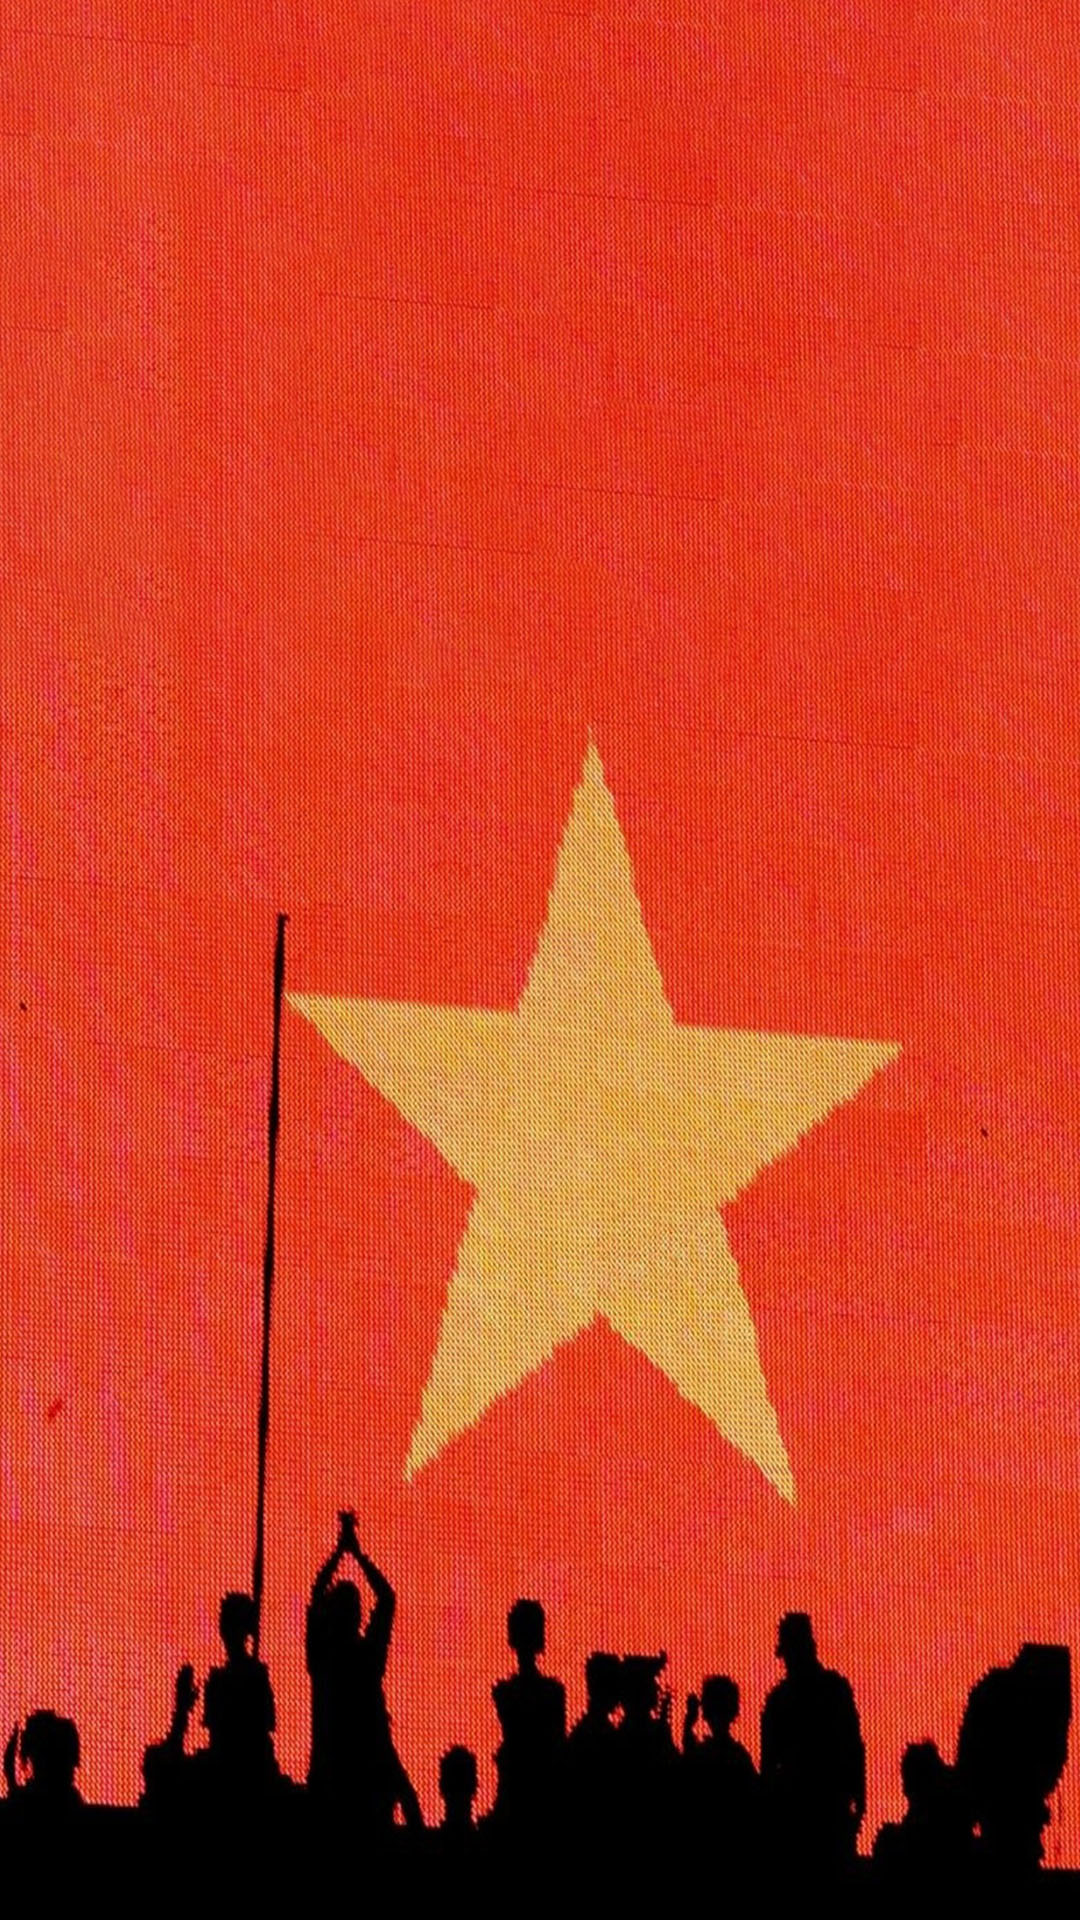 Hình nền lá cờ Việt Nam